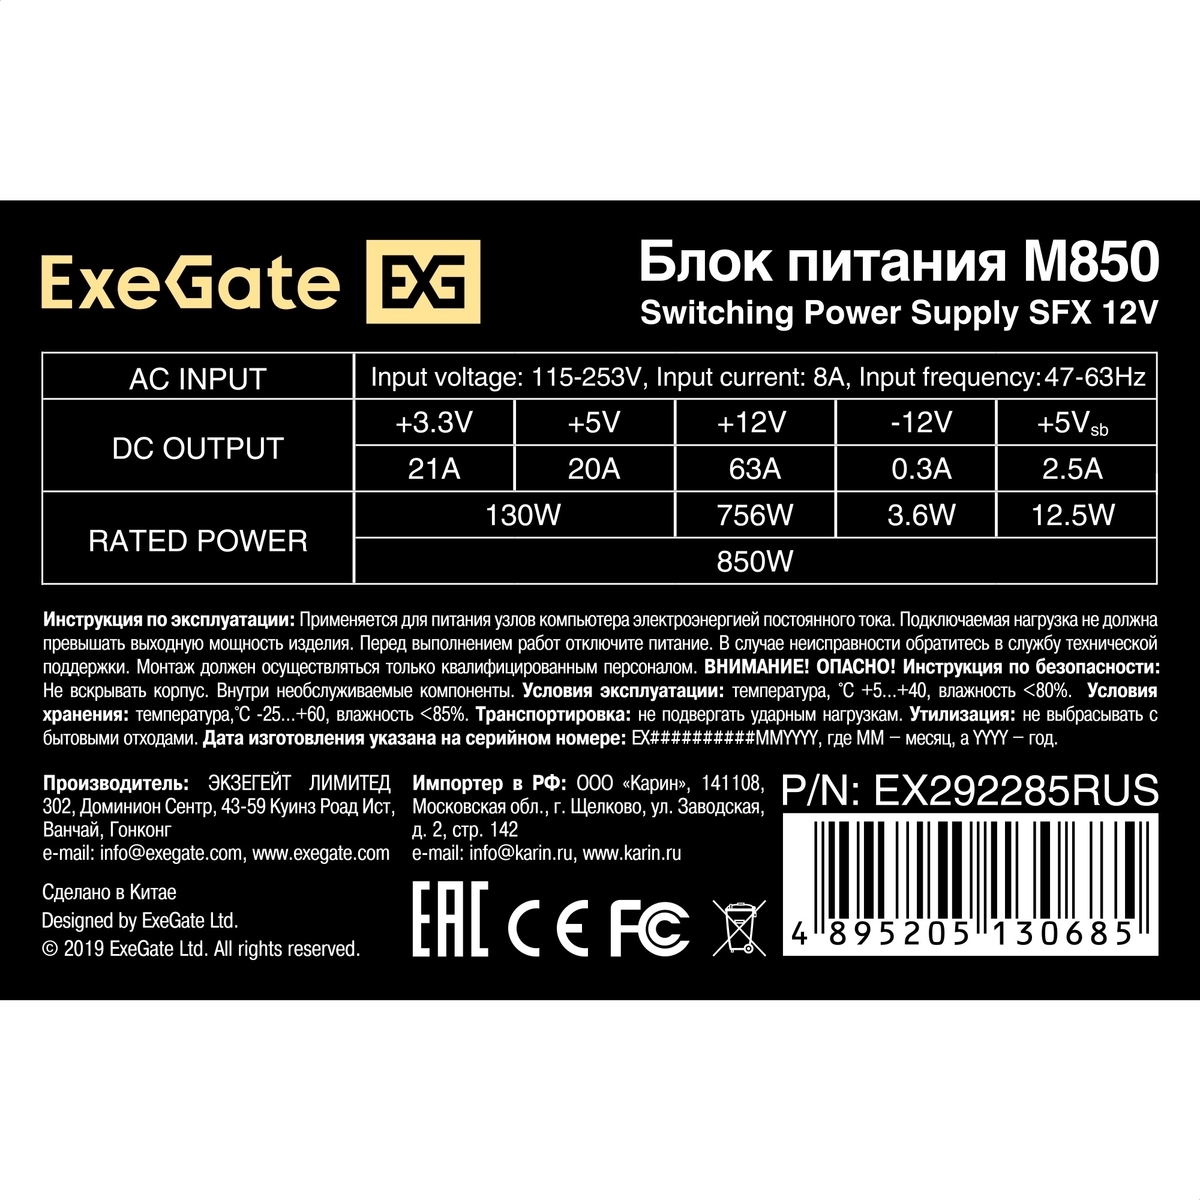  850W ExeGate M850